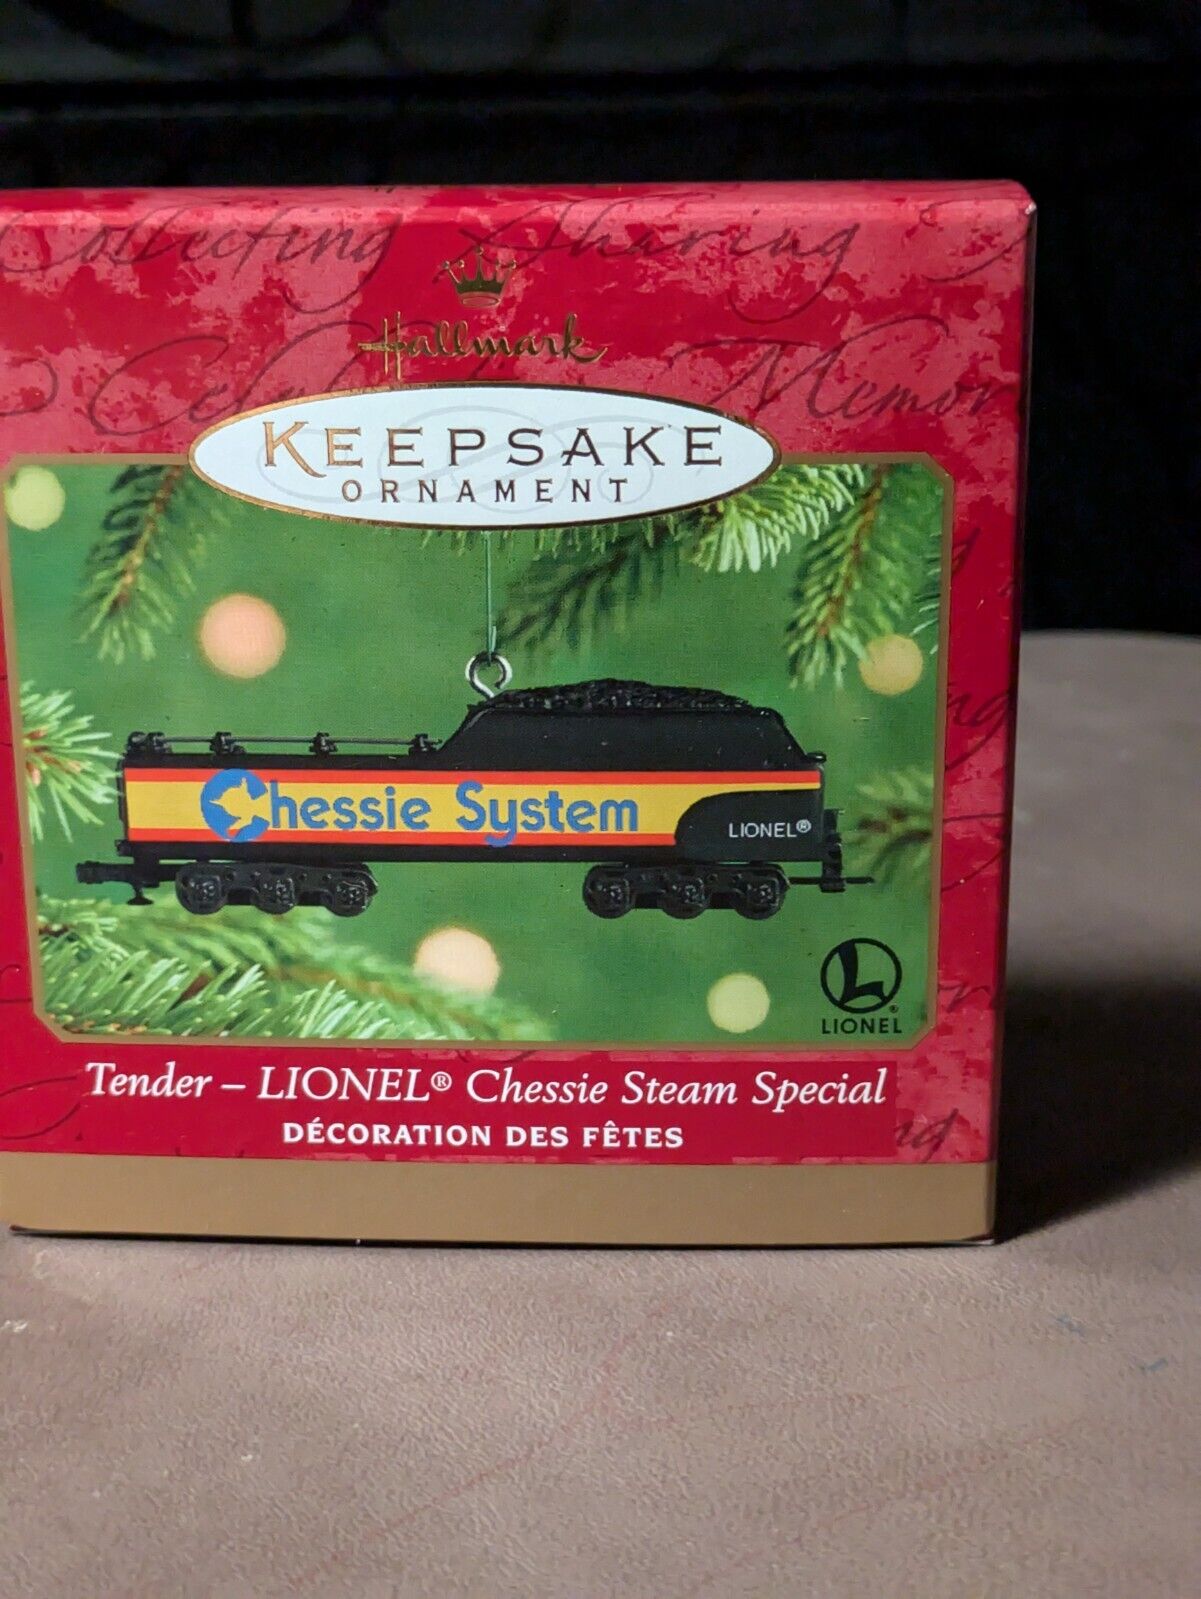 Hallmark Keepsake ornament Tender Lionel Chessie Steam Special train